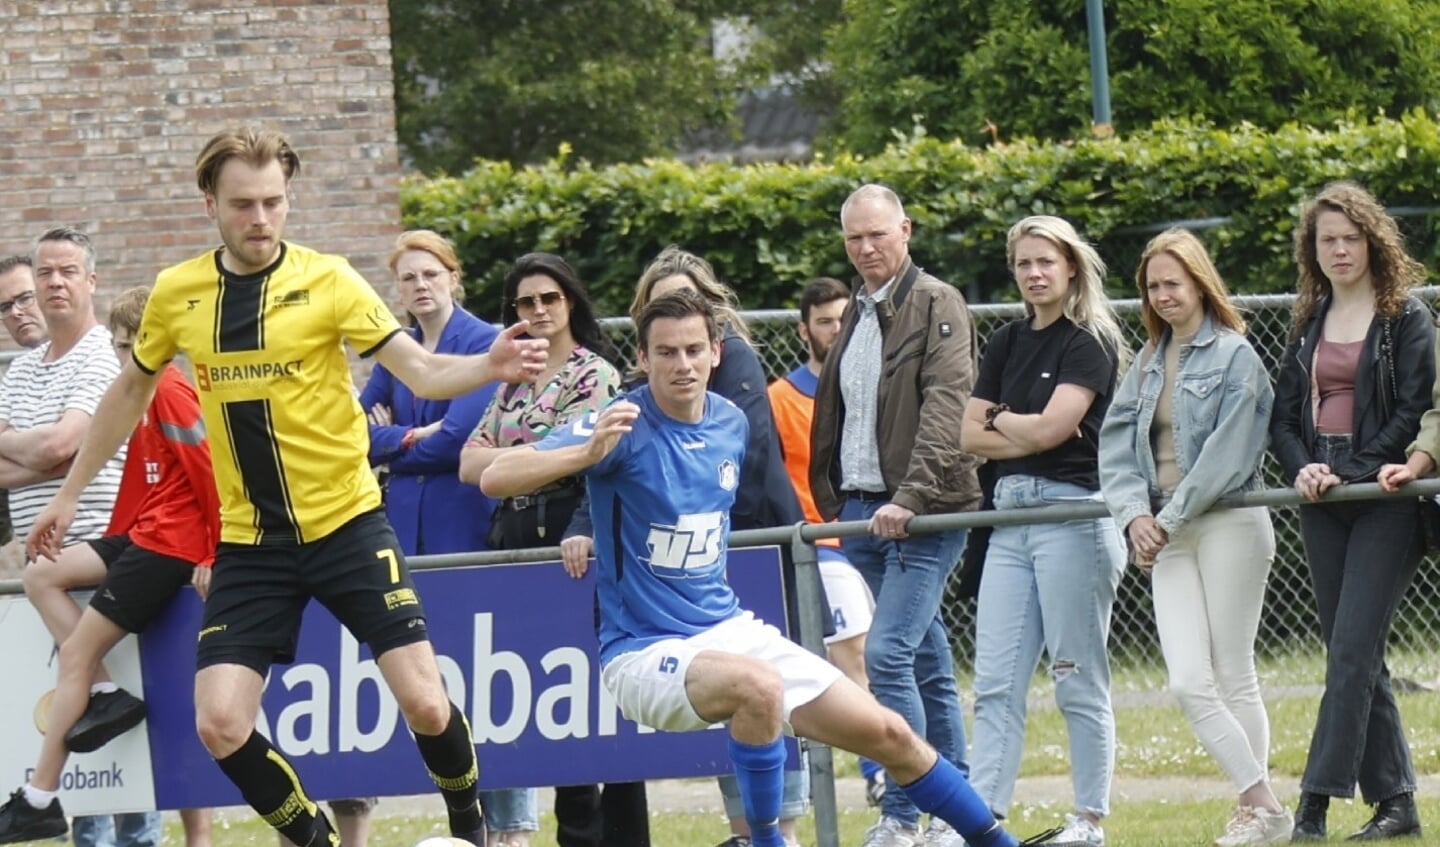 Sambeek (blayuw) verloor met 2-0.